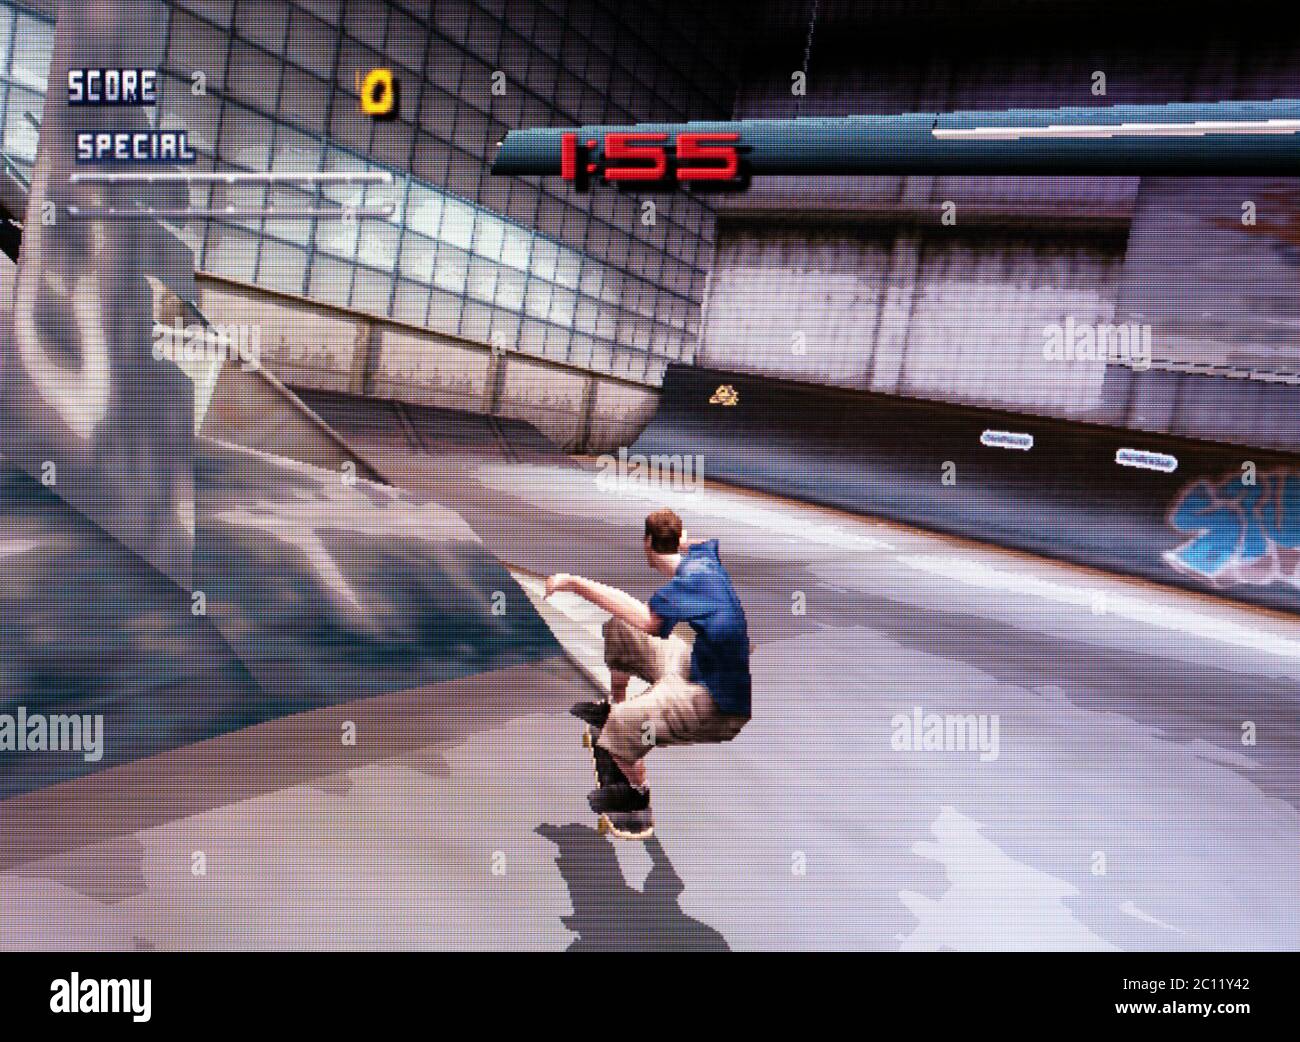 Tony Hawk's Pro Skater 2 - Nintendo 64 Videospiel - nur für redaktionelle  Verwendung Stockfotografie - Alamy